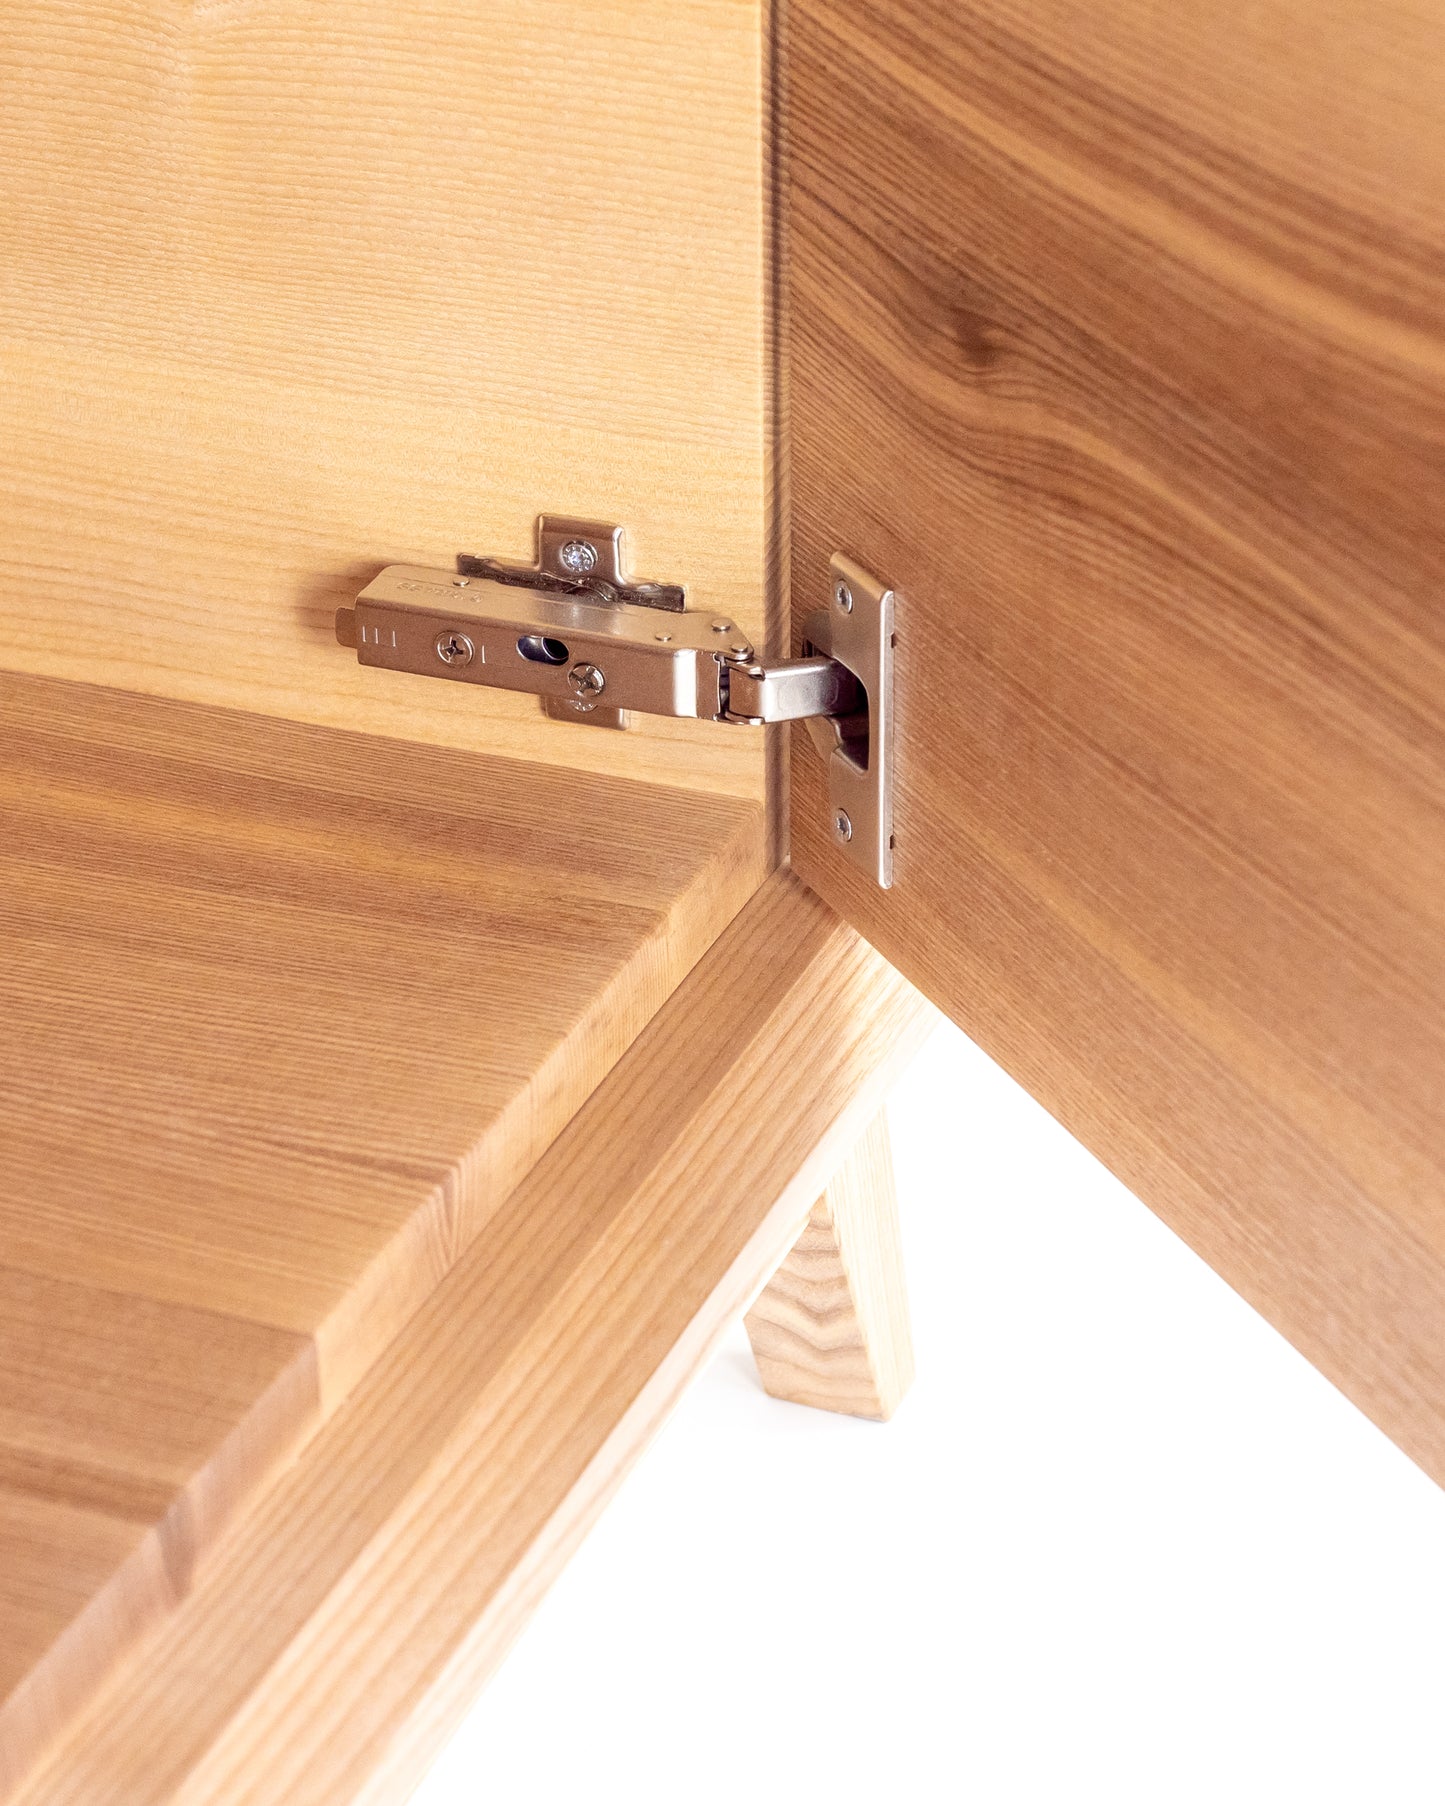 Lowboard in Esche:Komfort und Langlebigkeit:Mit den hochwertigen Soft-Close-Scharnieren in unserem Lowboard erleben Sie ein sanftes Schließen der Tür ohne lautes Zuschlagen.